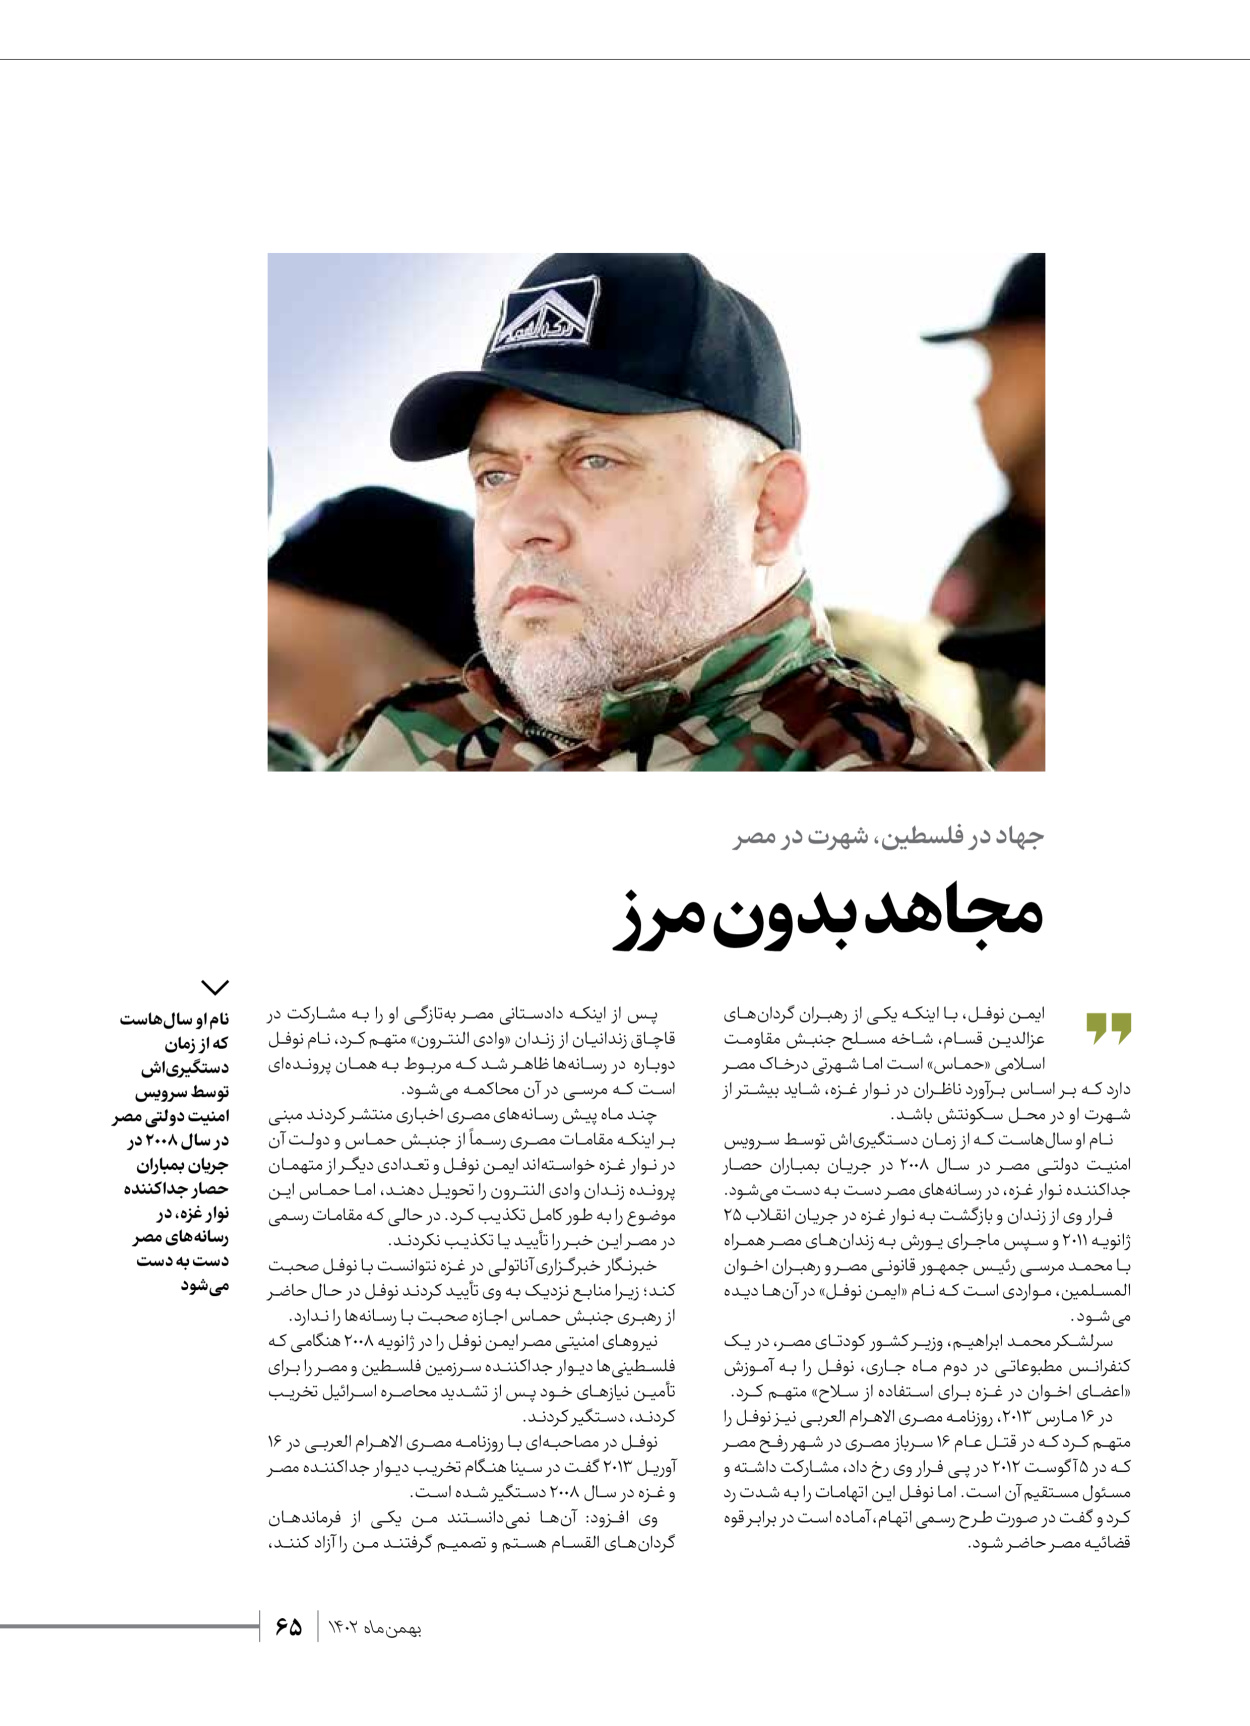 روزنامه ایران - ویژه نامه شهدای قدس ۳ - ۱۴ بهمن ۱۴۰۲ - صفحه ۶۵